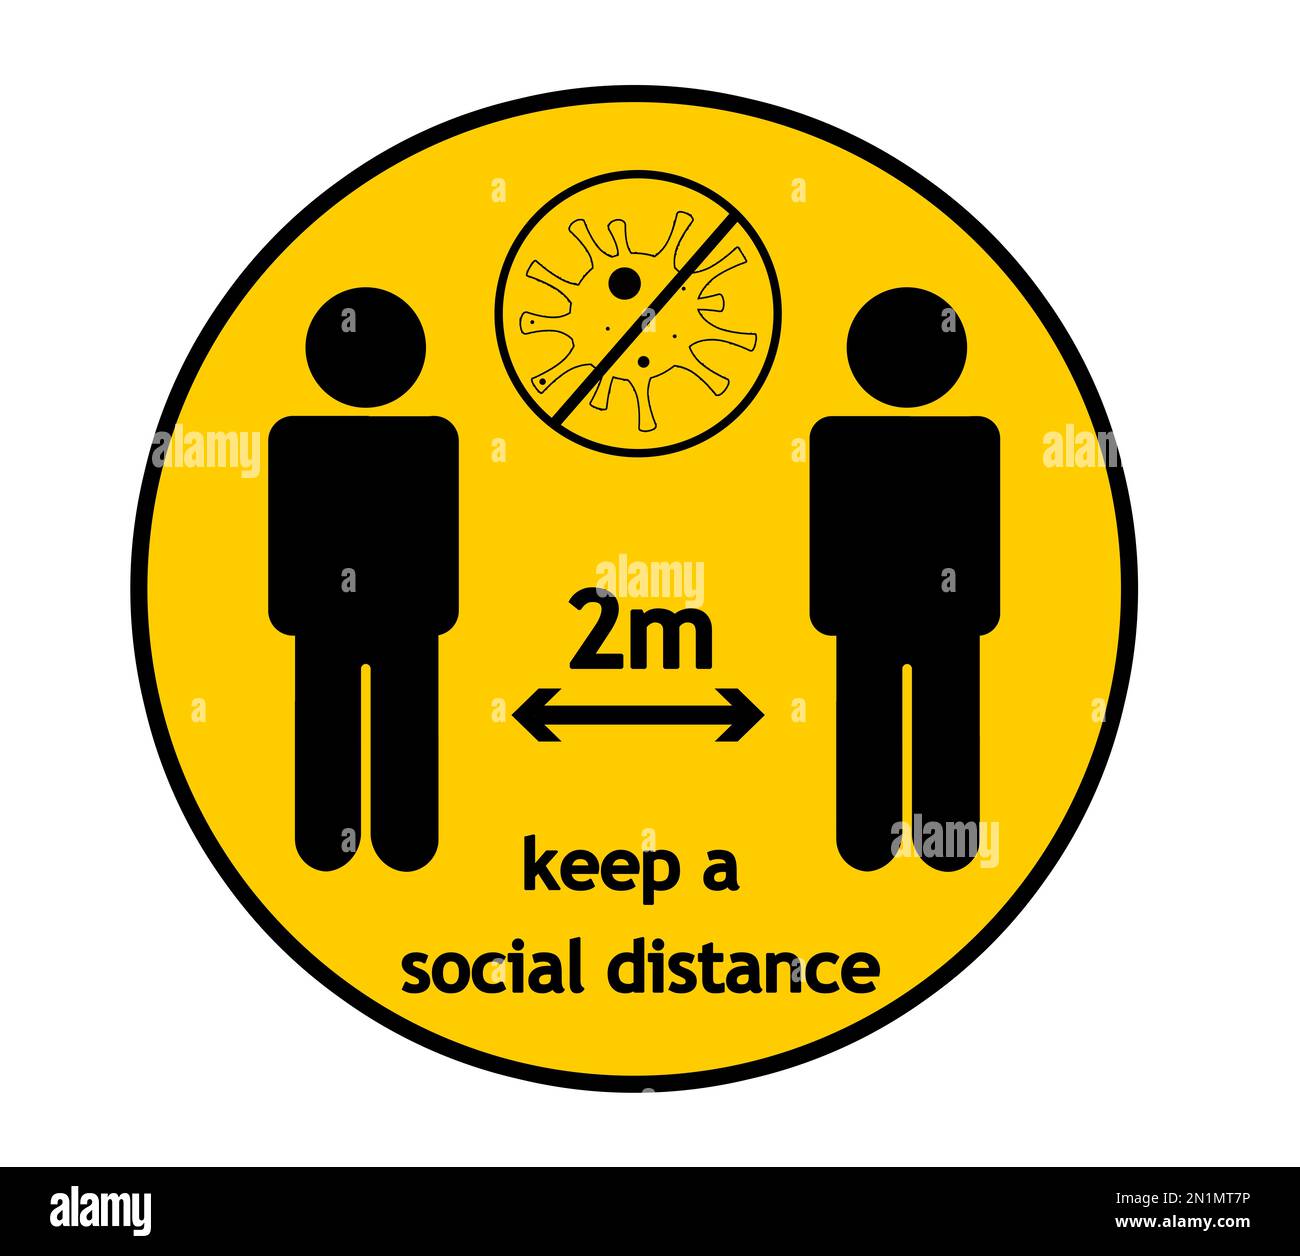 Abstand halten – gelbes rundes Schild, Illustration. Schutzmaßnahmen während der Coronavirus-Pandemie Stockfoto